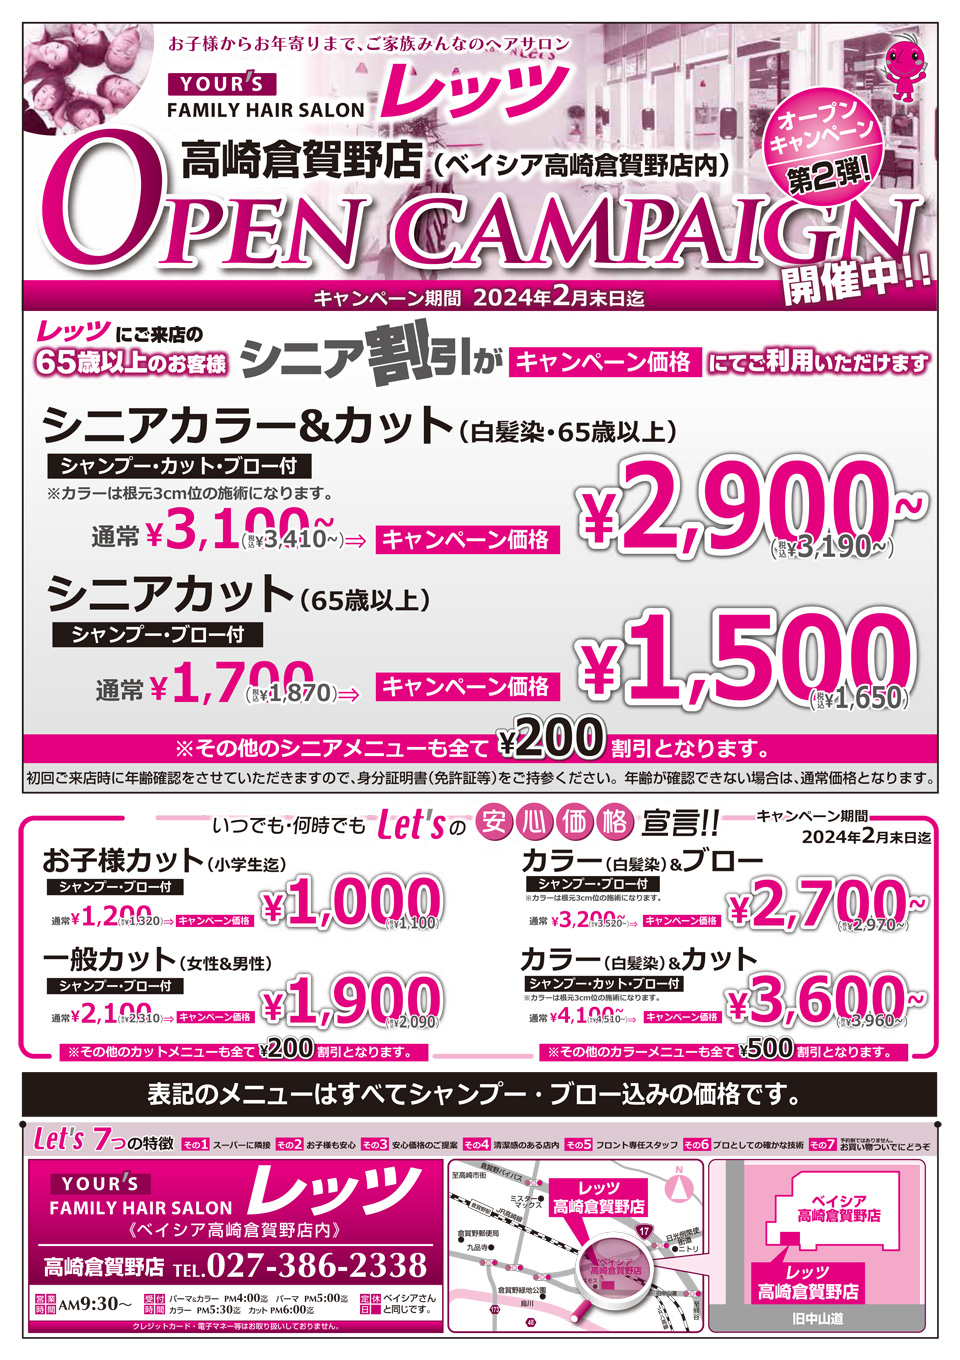 倉賀野店 オープンキャンペーン